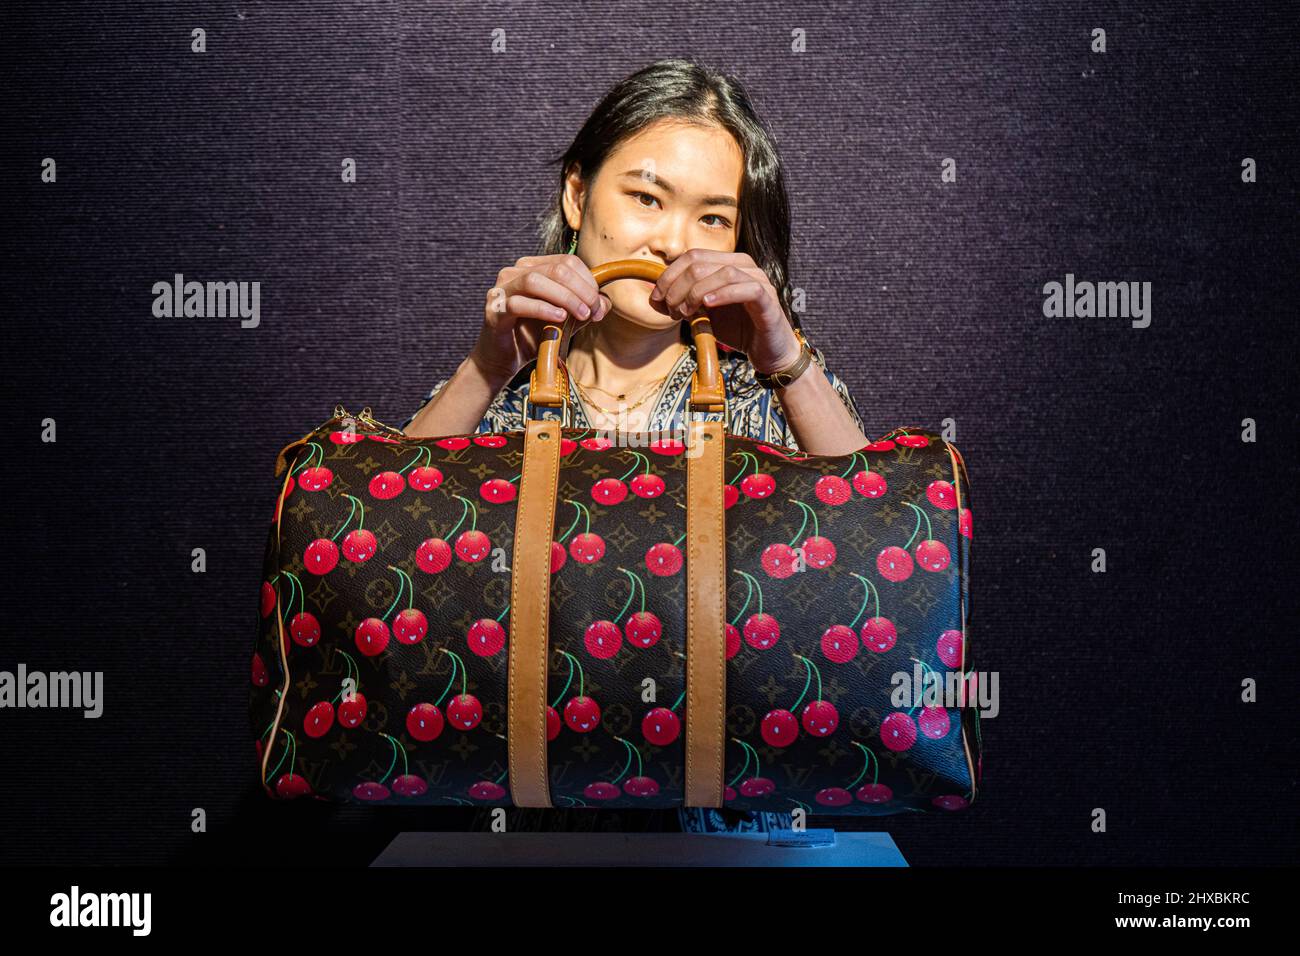 Murakami louis vuitton handbag hi-res stock photography and images